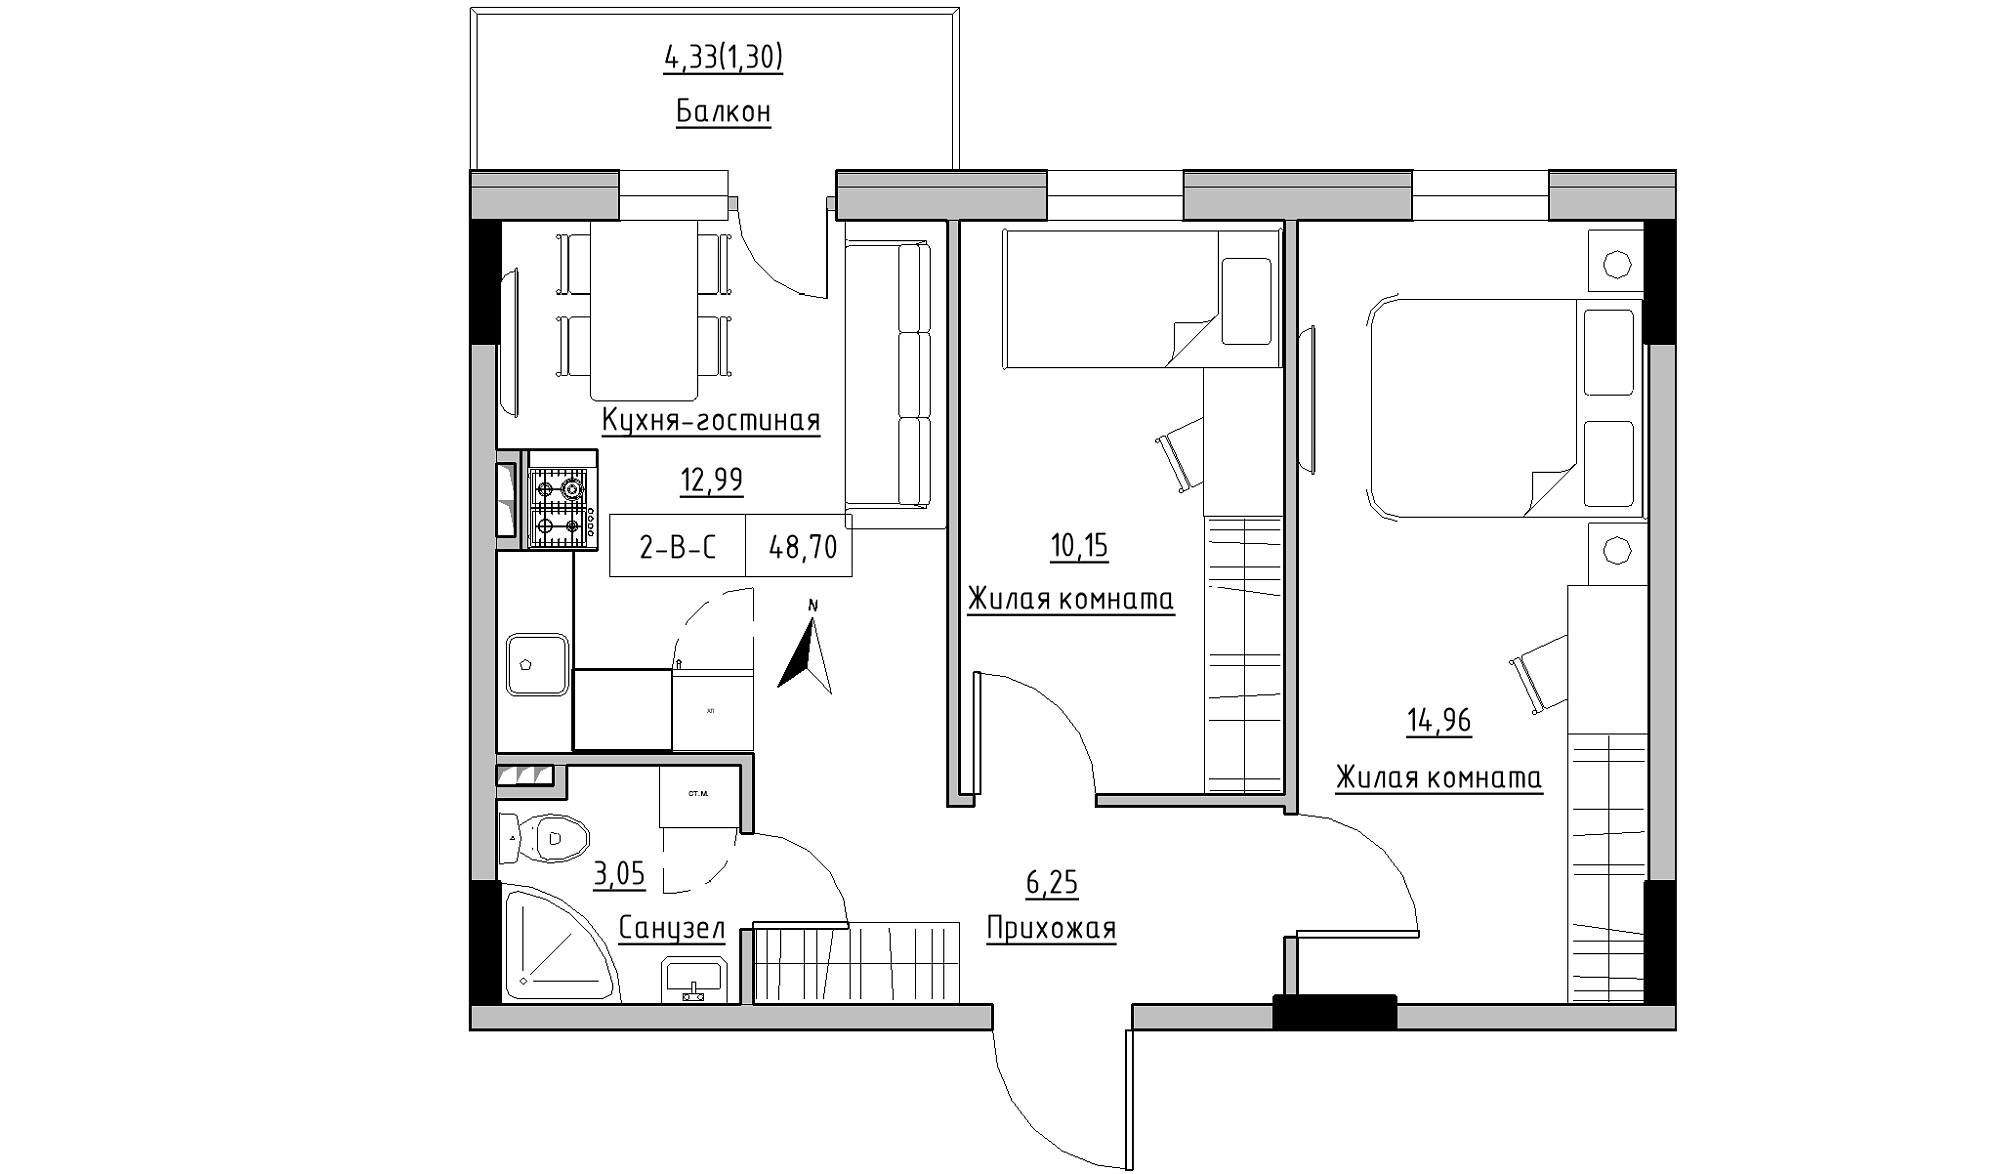 Планування 2-к квартира площею 48.7м2, KS-025-02/0009.